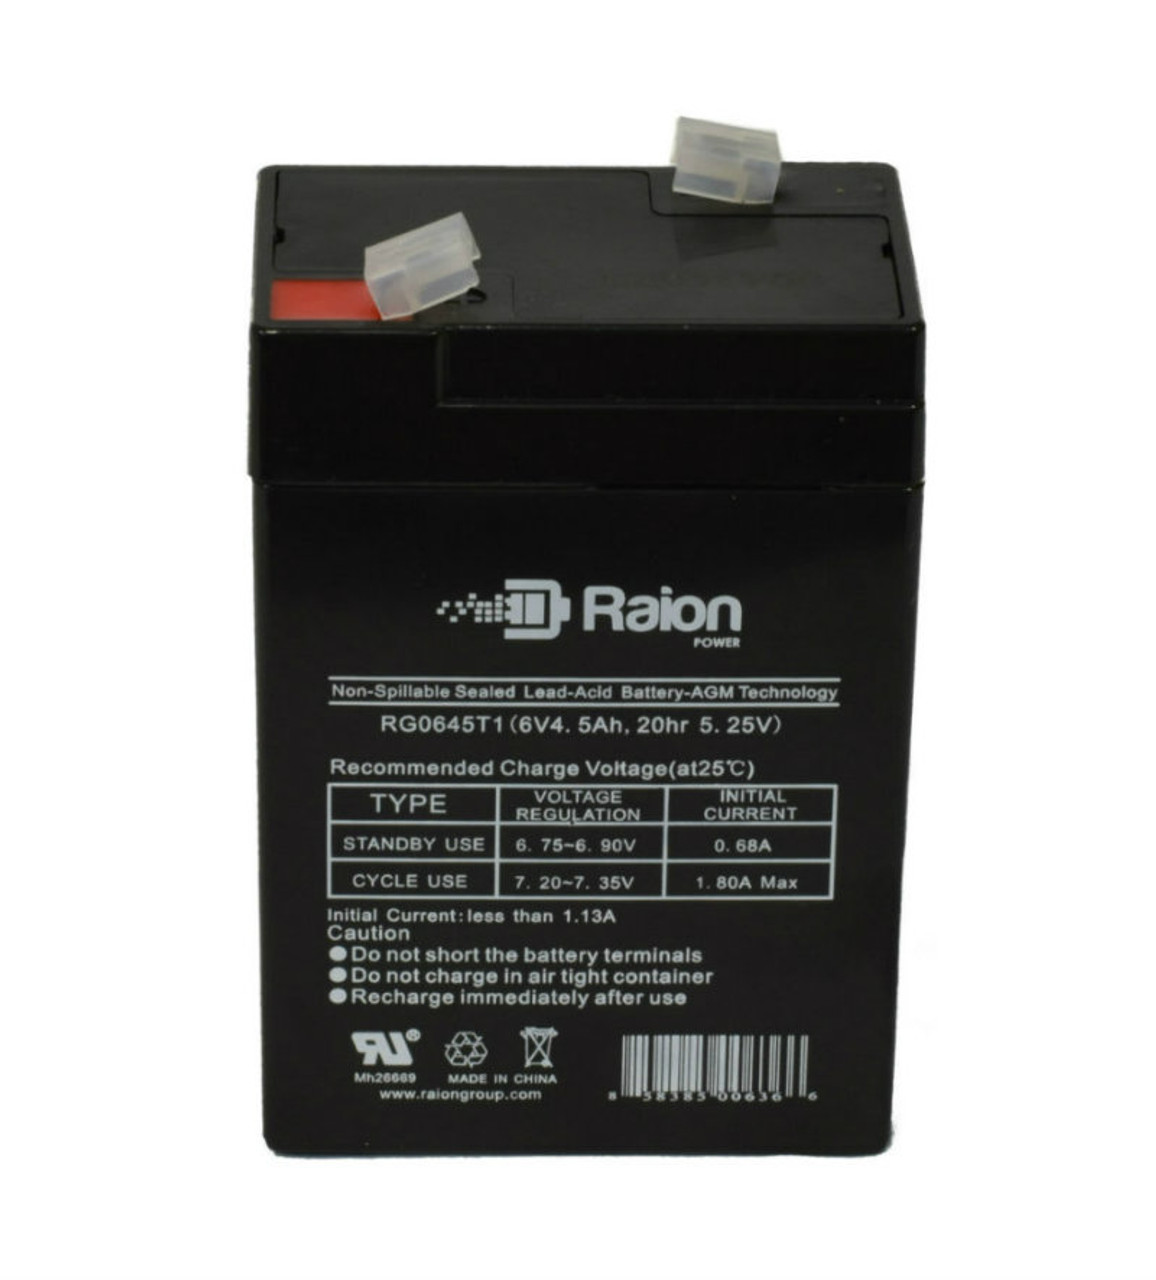 Raion Power RG0645T1 Replacement Battery Cartridge for Douglas Guardian DG64